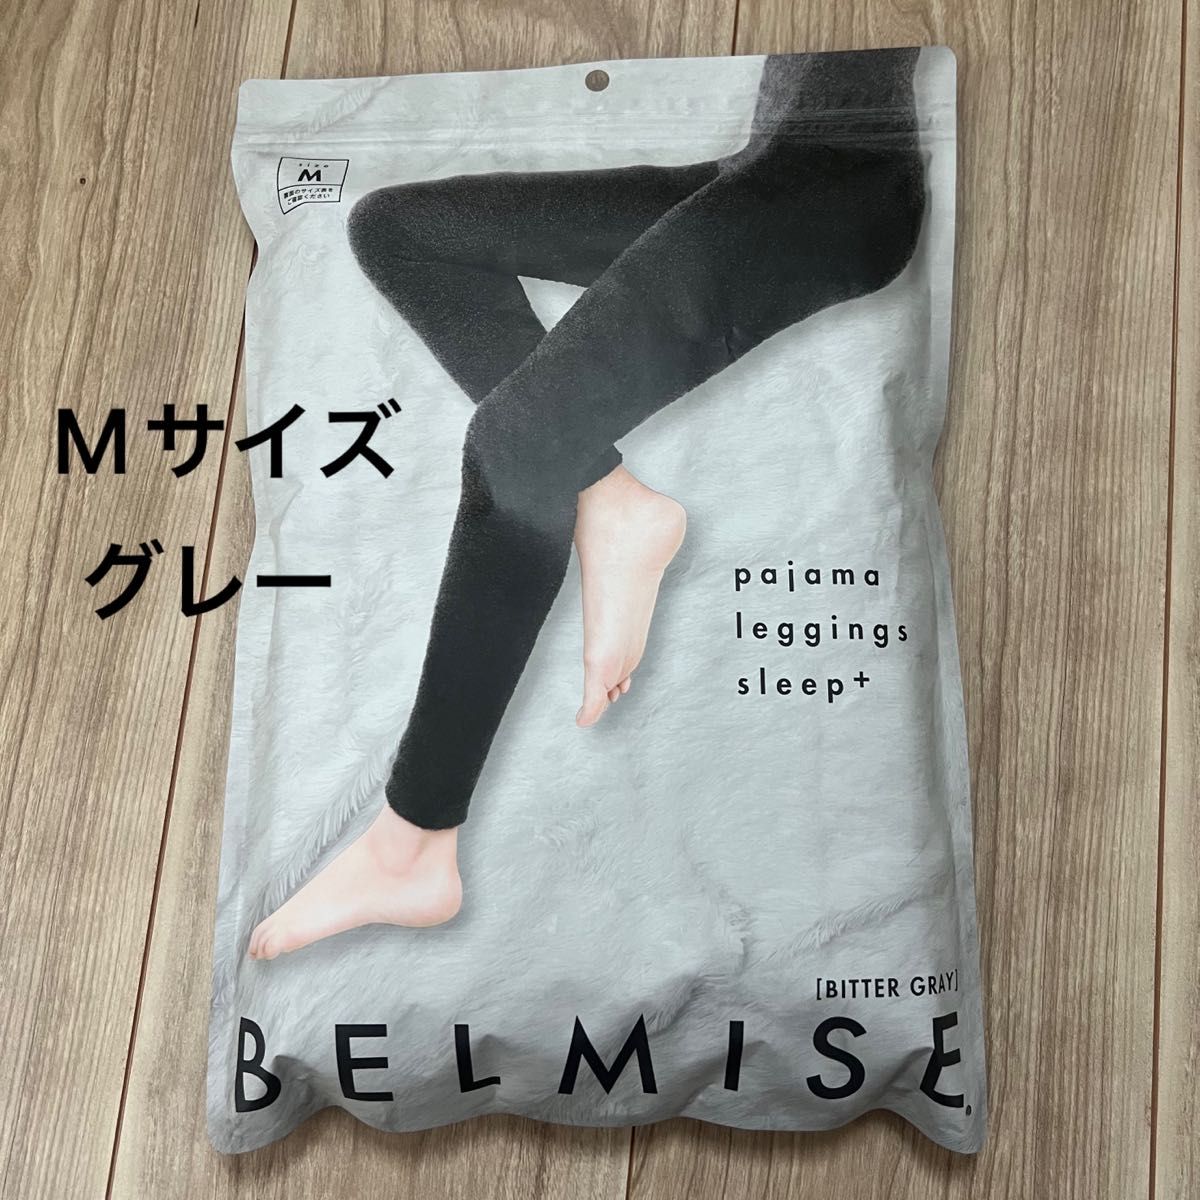 公式BELMISE ベルミス パジャマレギンススリープ+ ビターグレー S